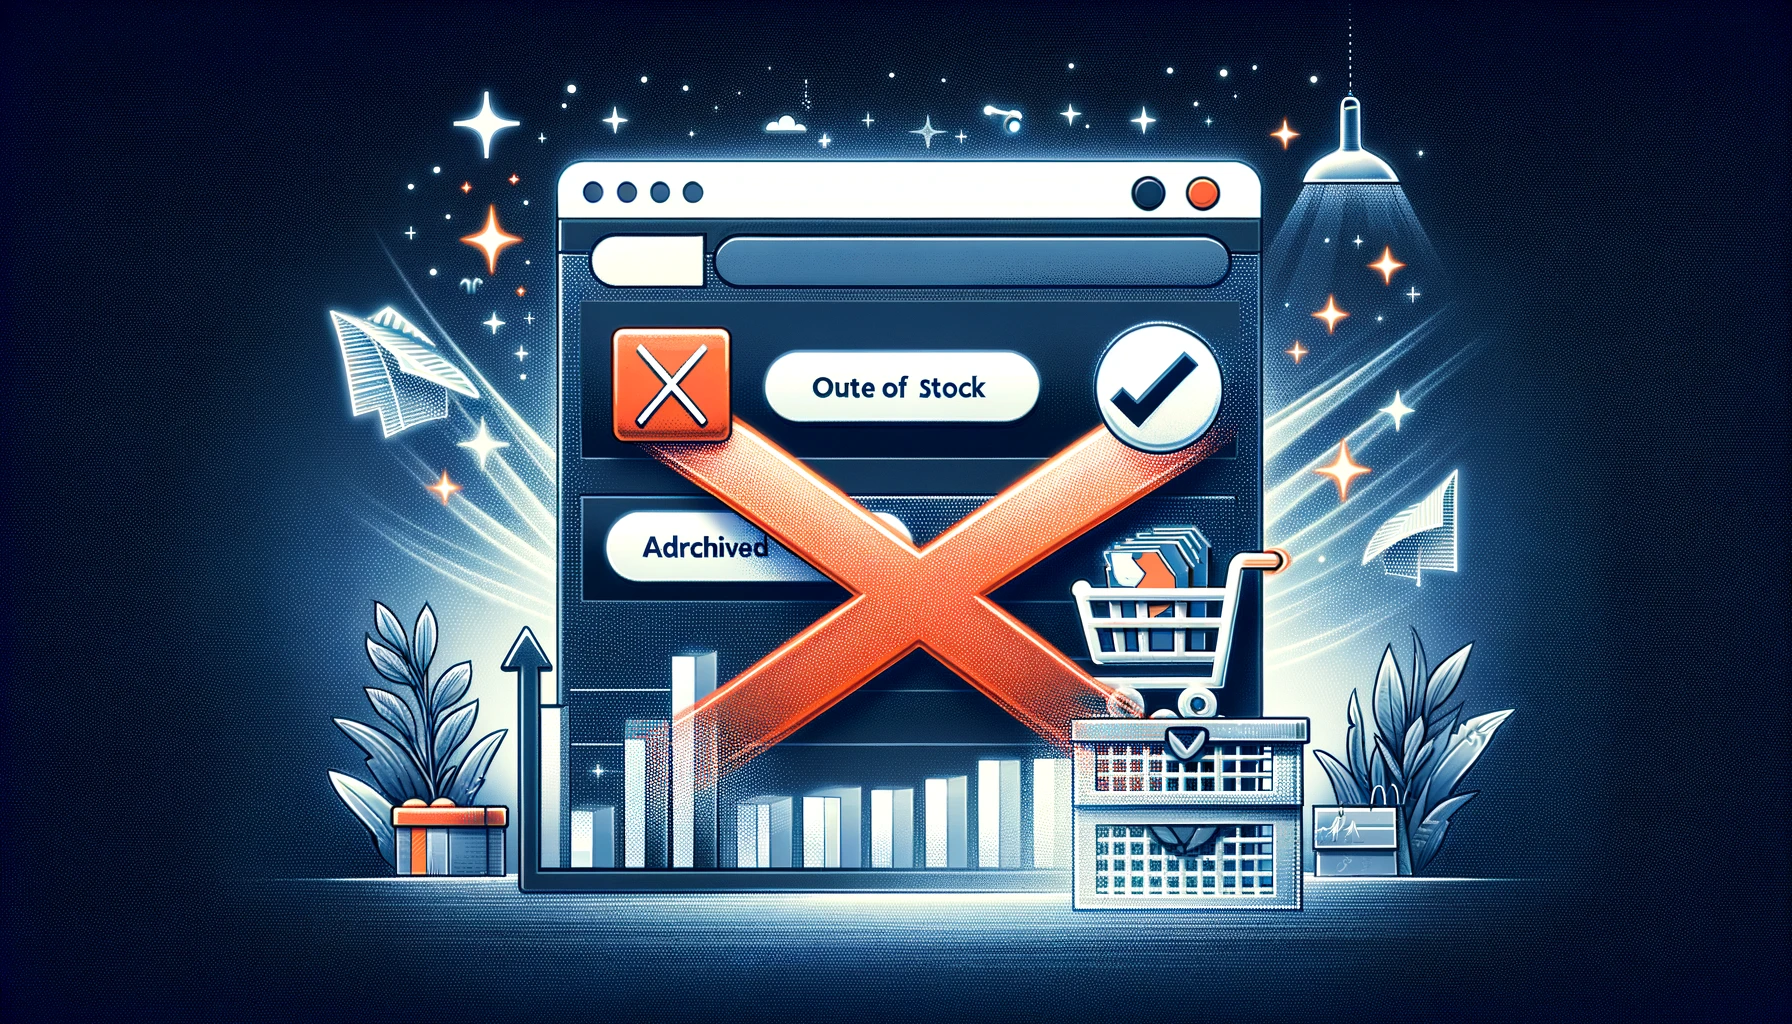 ¿Por qué no deberías borrar productos de tu tienda online?